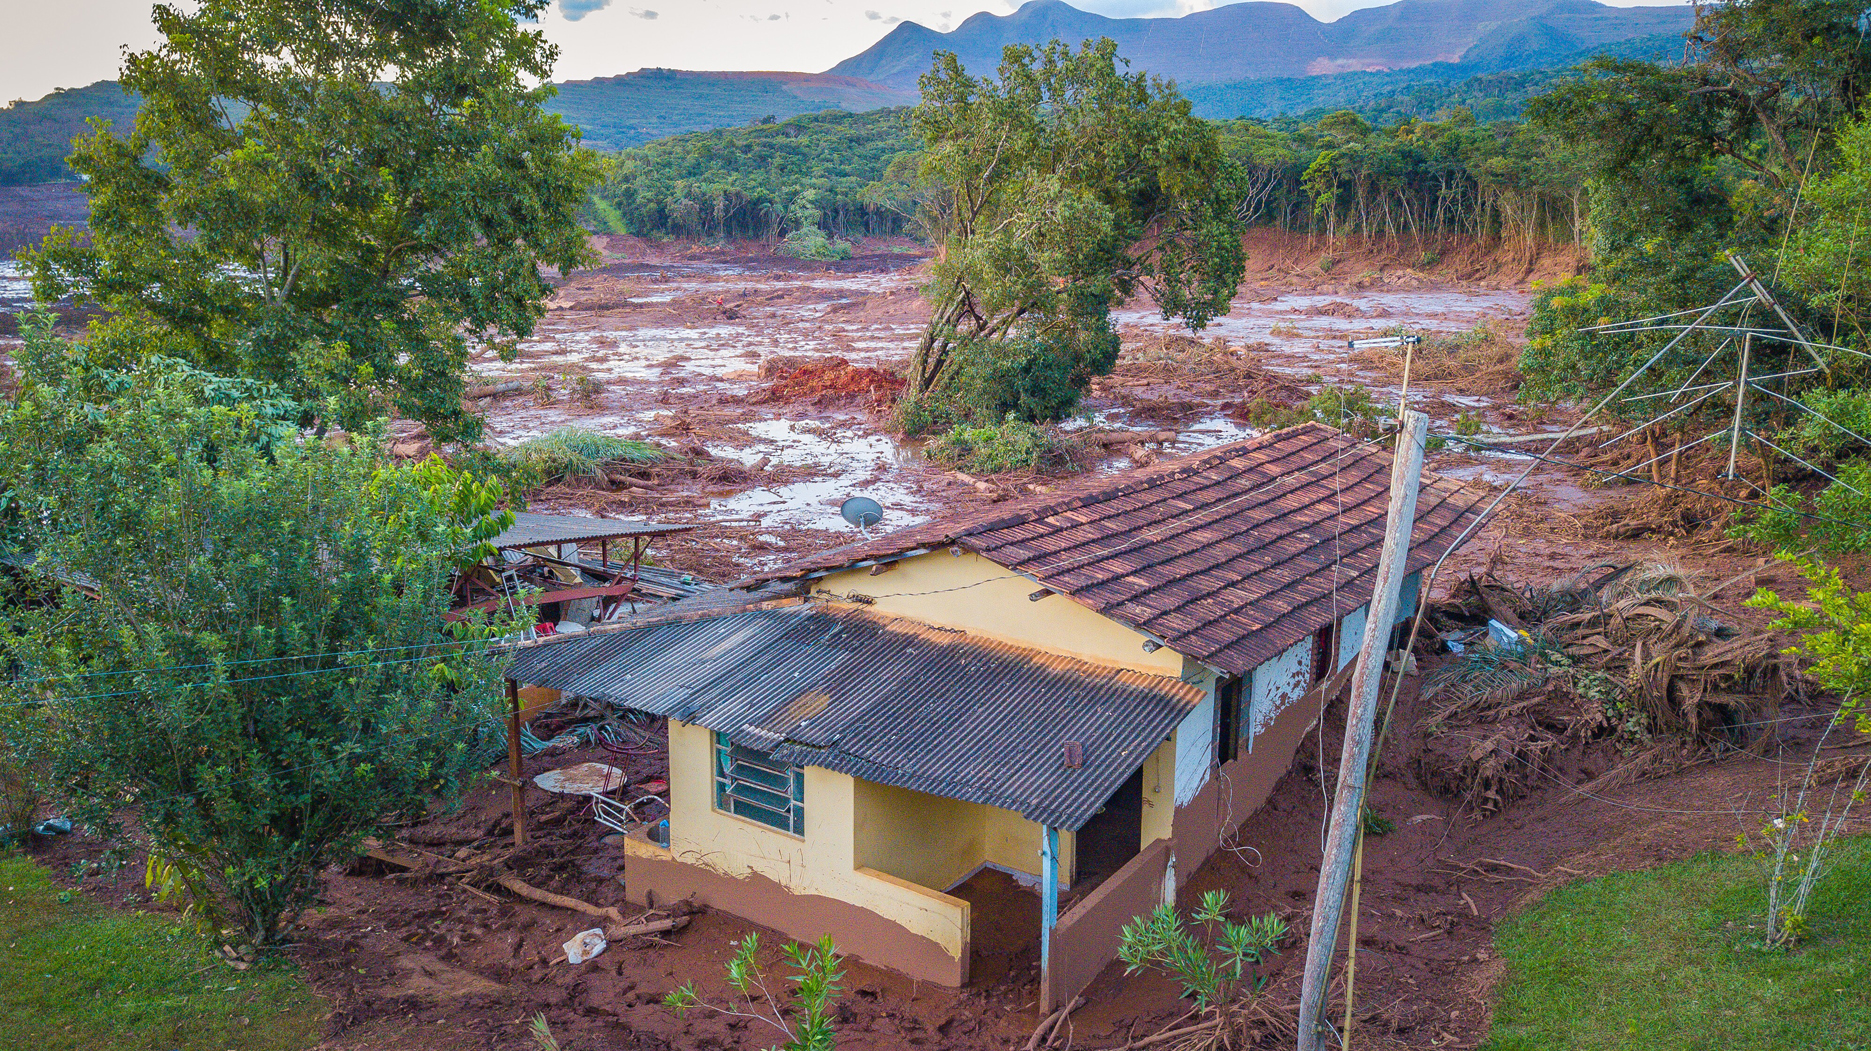 Câmara cria comissão externa para acompanhar desdobramentos do desastre em Brumadinho